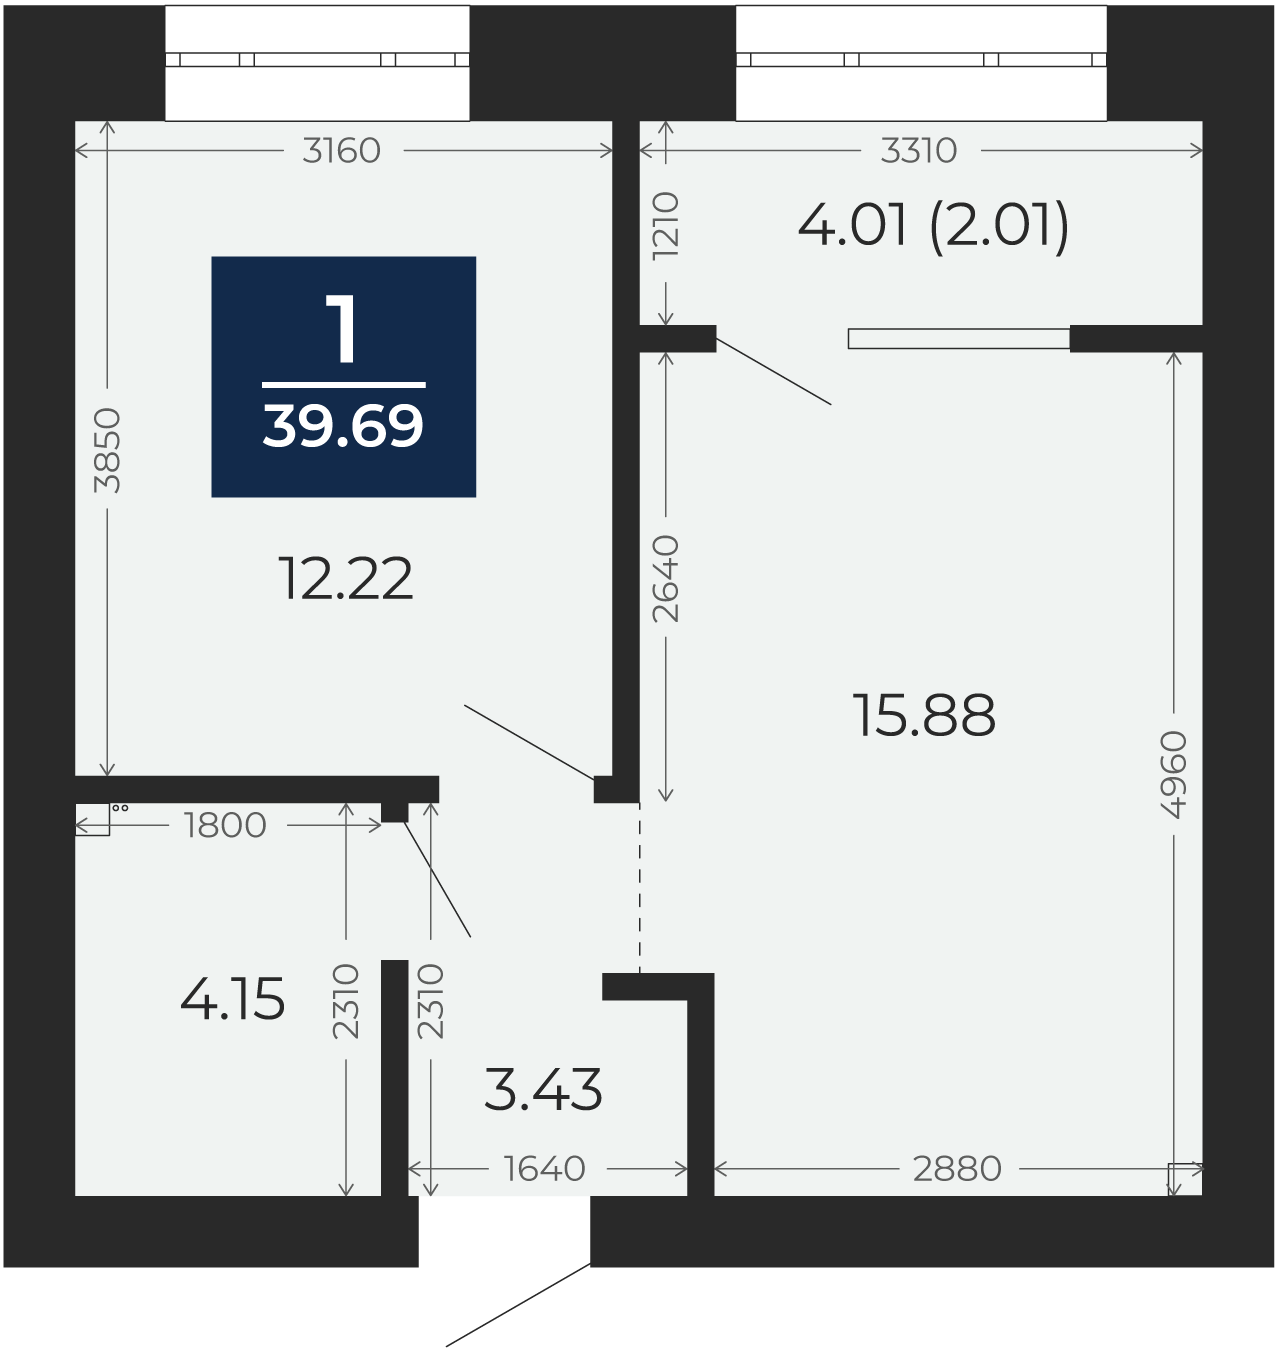 Квартира № 233, 1-комнатная, 39.69 кв. м, 7 этаж